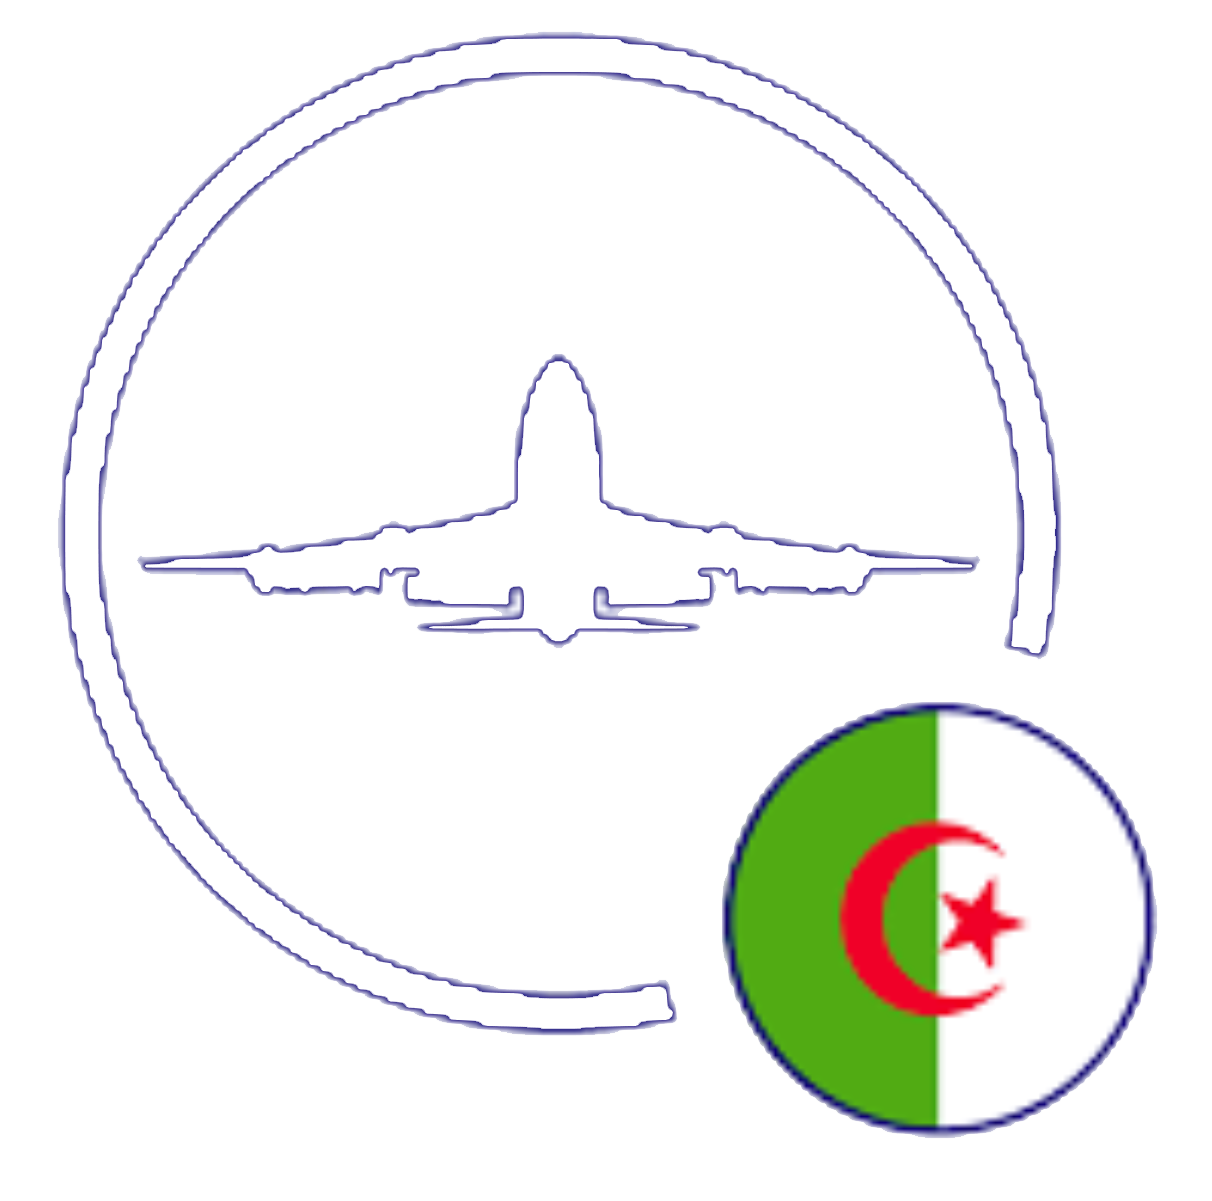 IVAO Algeria